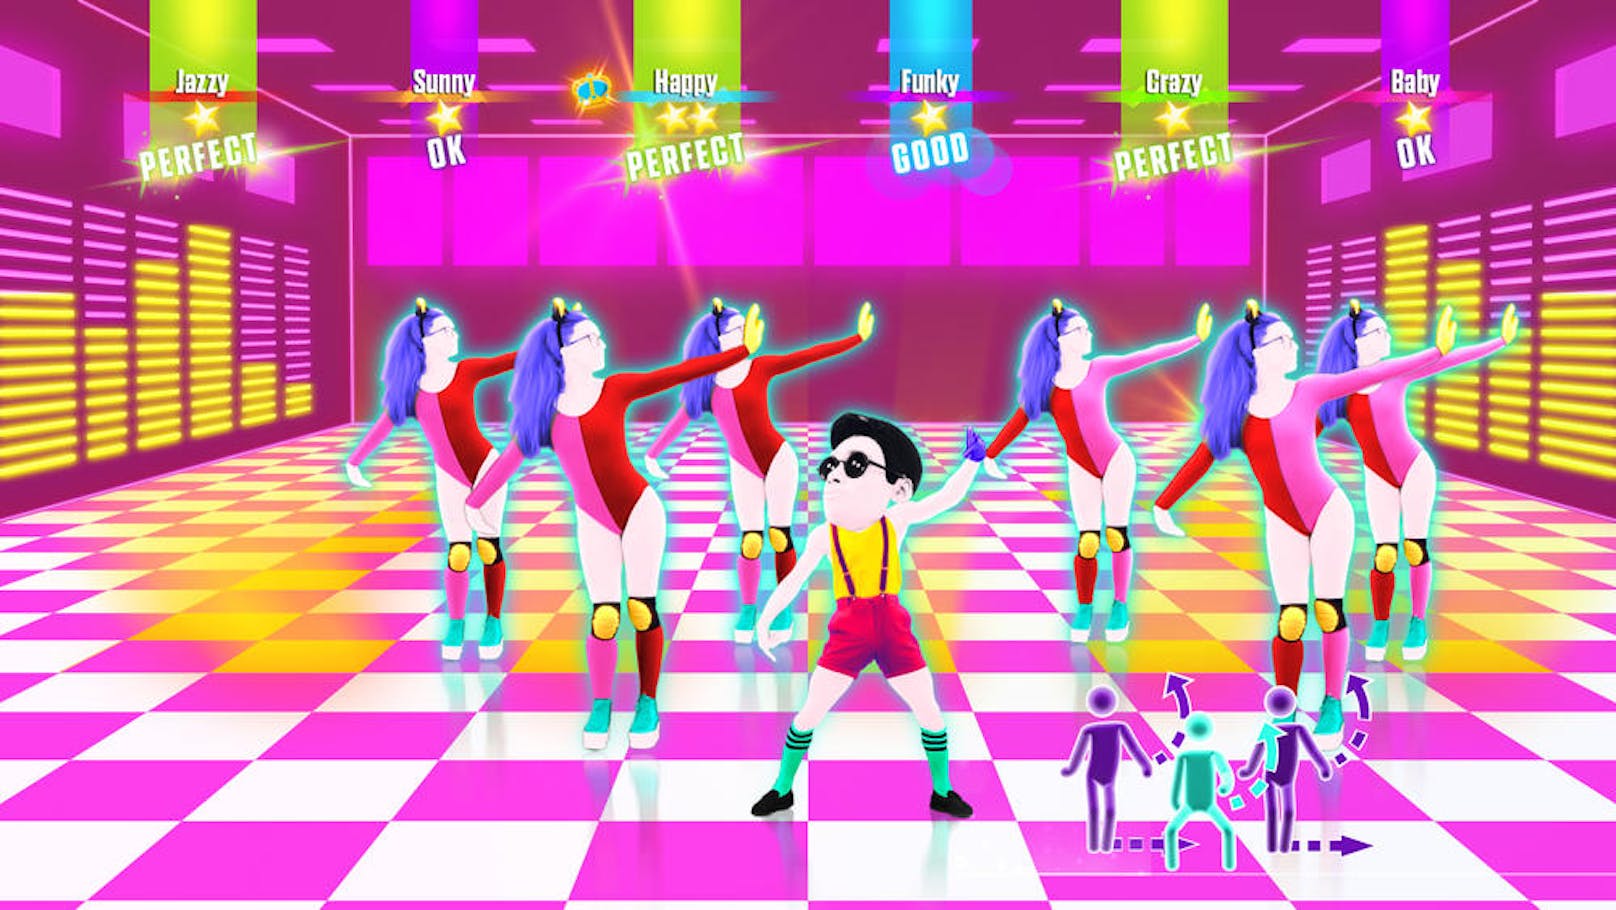 Daneben liefert Just Dance 2017 gewohnt gute Qualität: Die Lieder klingen super, die Titel-Auswahl bedient viele Geschmäcker, die Grafik und Effekte sind grellbunt dem "Feel Good"-Setting angepasst und in einer Partyrunde macht das Spiel so richtig Spaß.